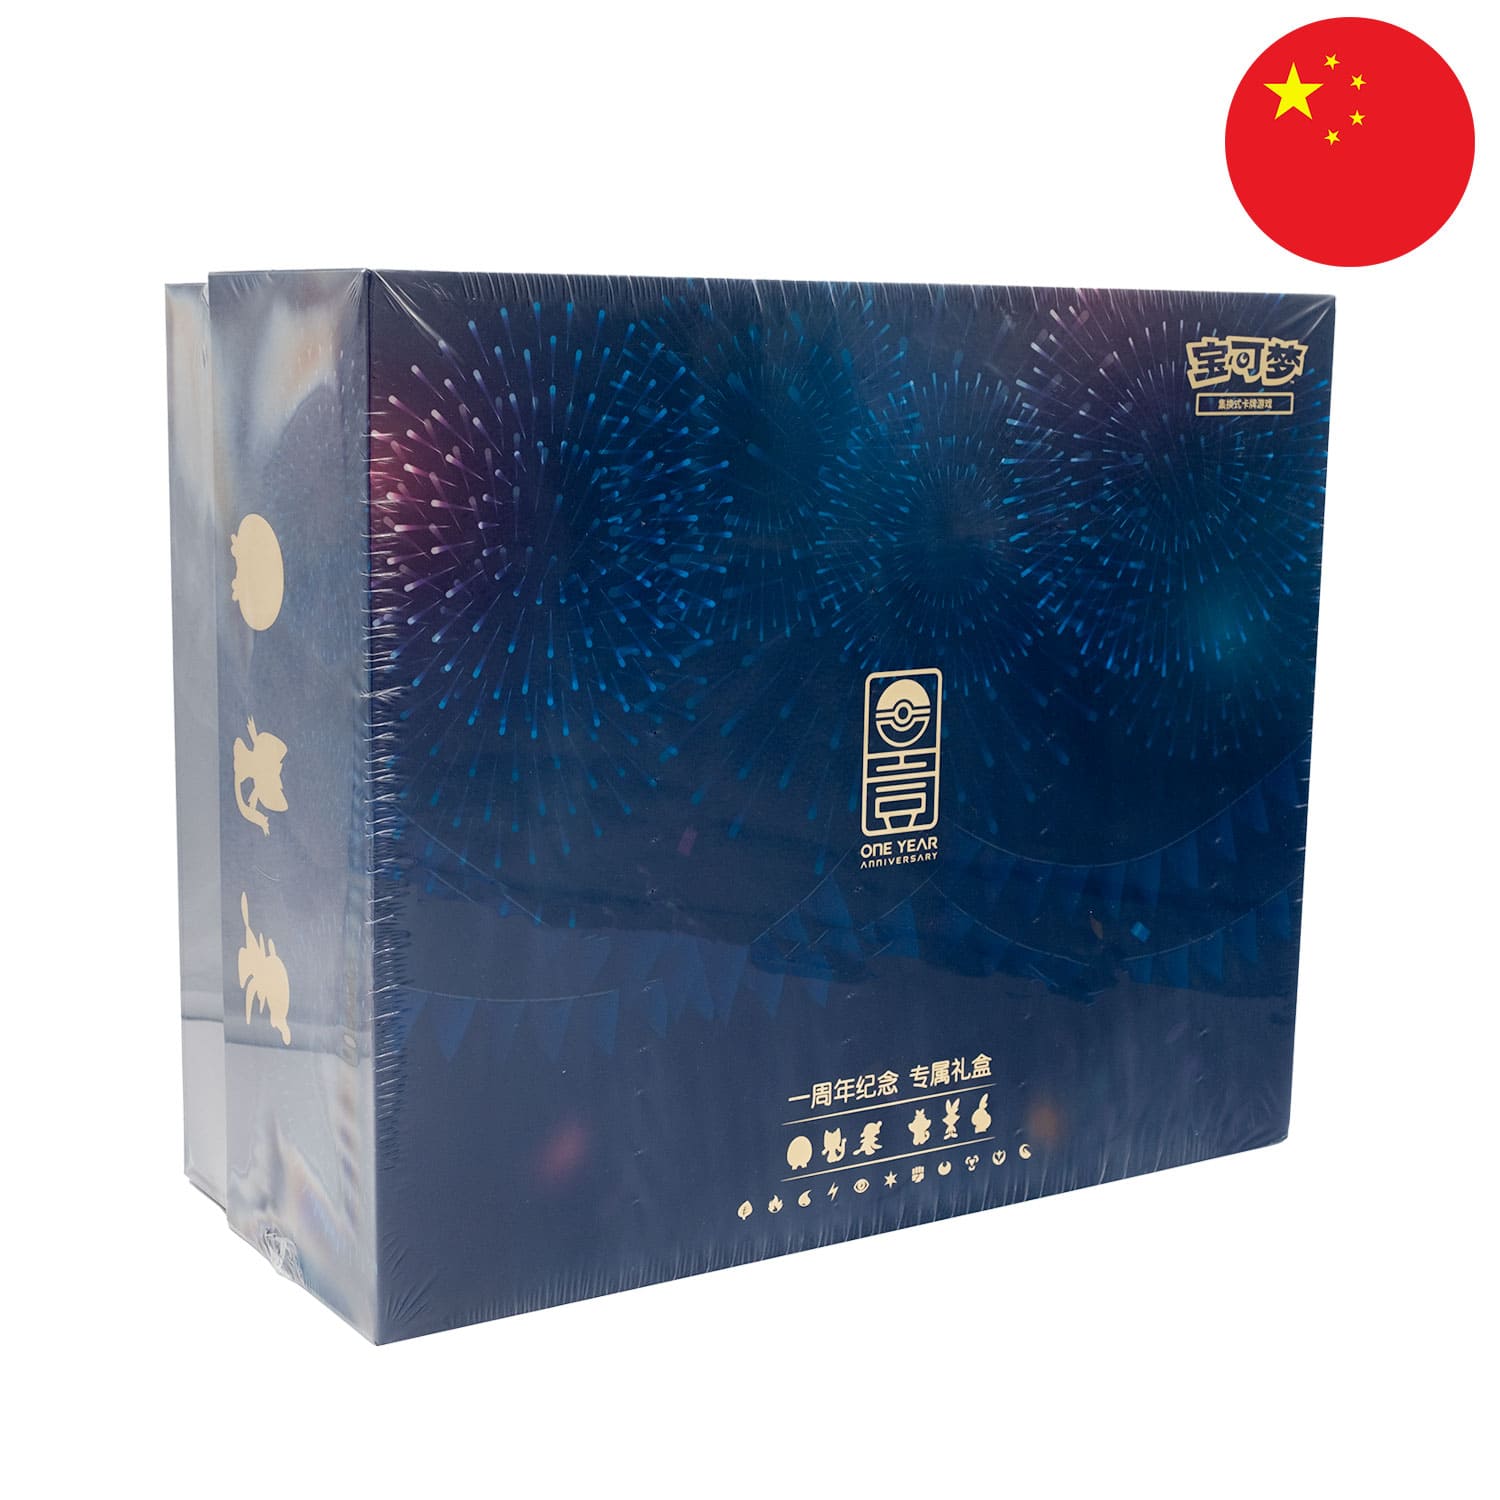 Die Chinesische Alola Box zum 1 Jährigen Jubiläum, frontal und schräg als Hauptbild im Goldlook. China Flagge in der Ecke.